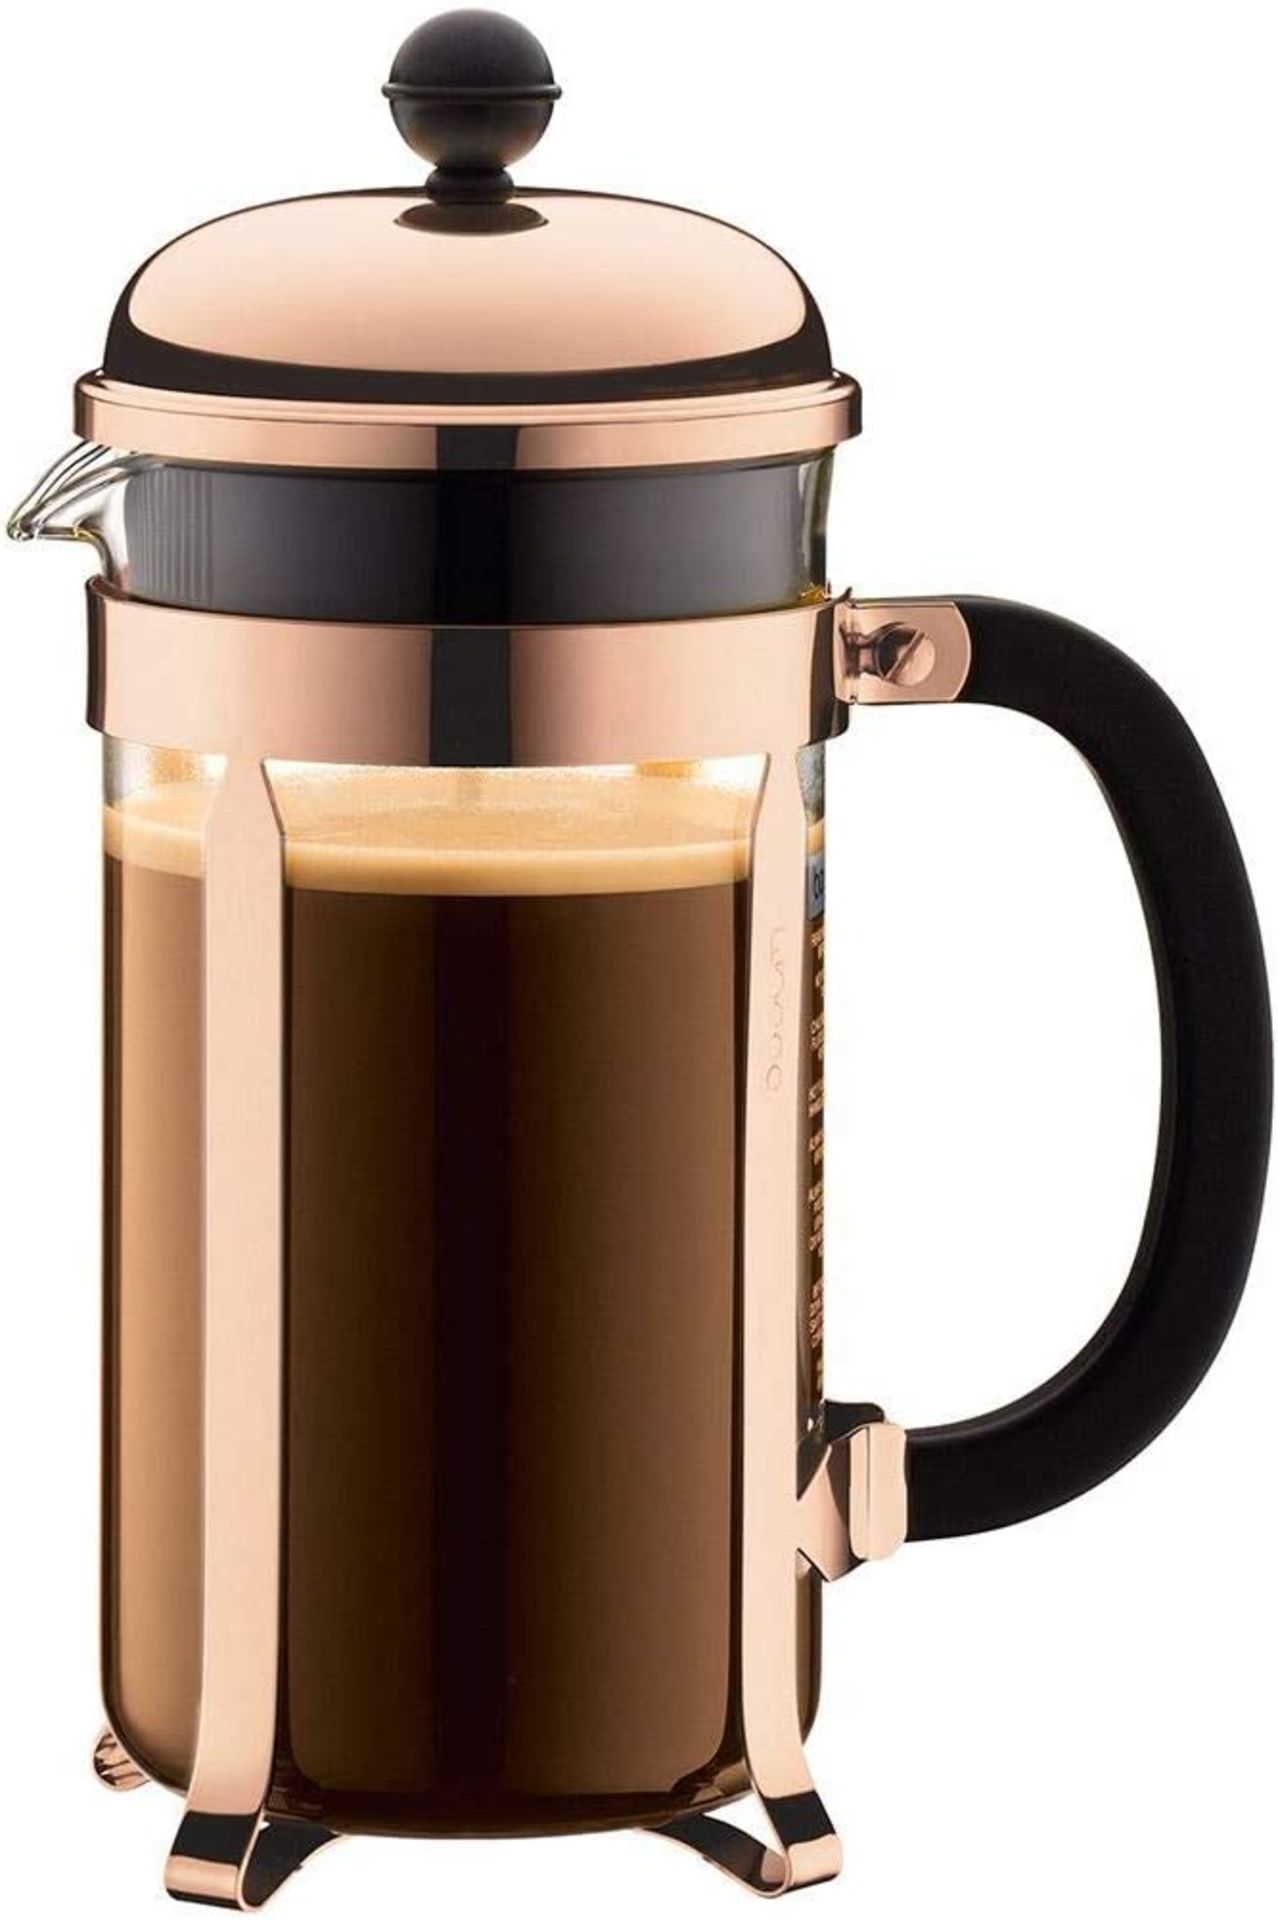 BODUM Chambord 8 Cup French Press Coffee Maker, Copper, 1.0 l, 34 oz